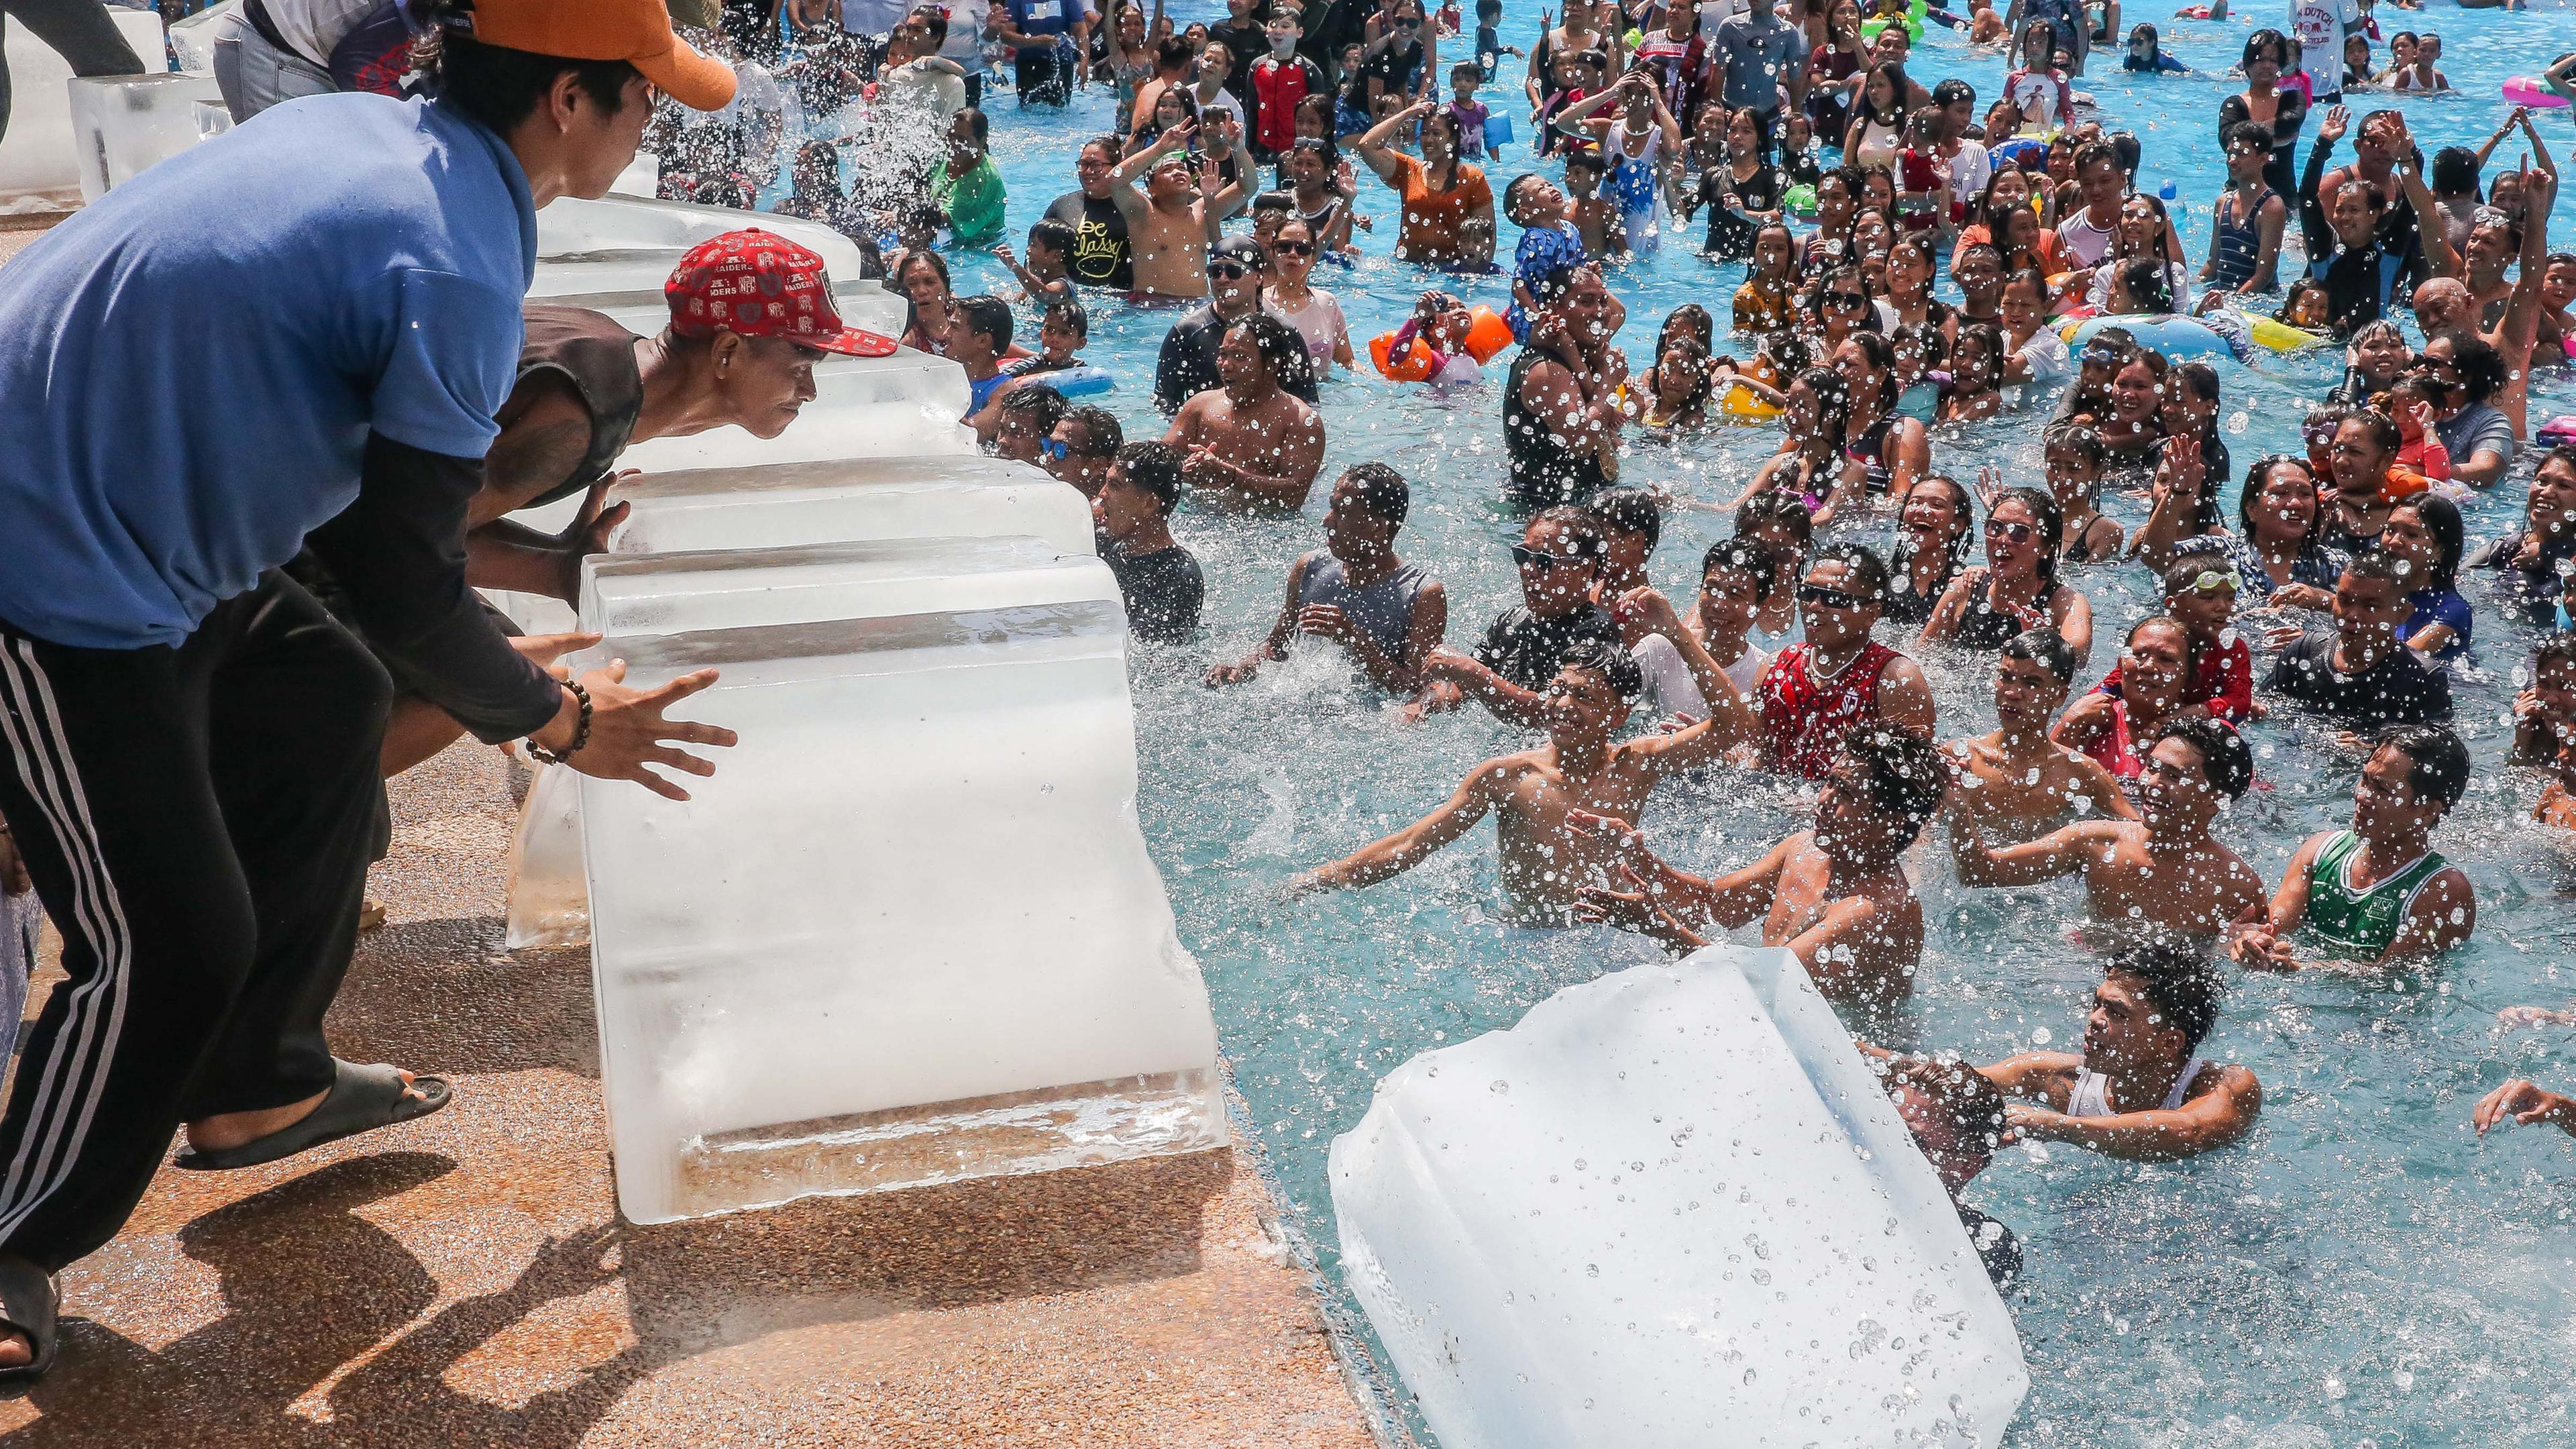 Philippinen, Bulacan: Mitarbeiter schieben Eisblöcke in einen Swimmingpool in einem Resort